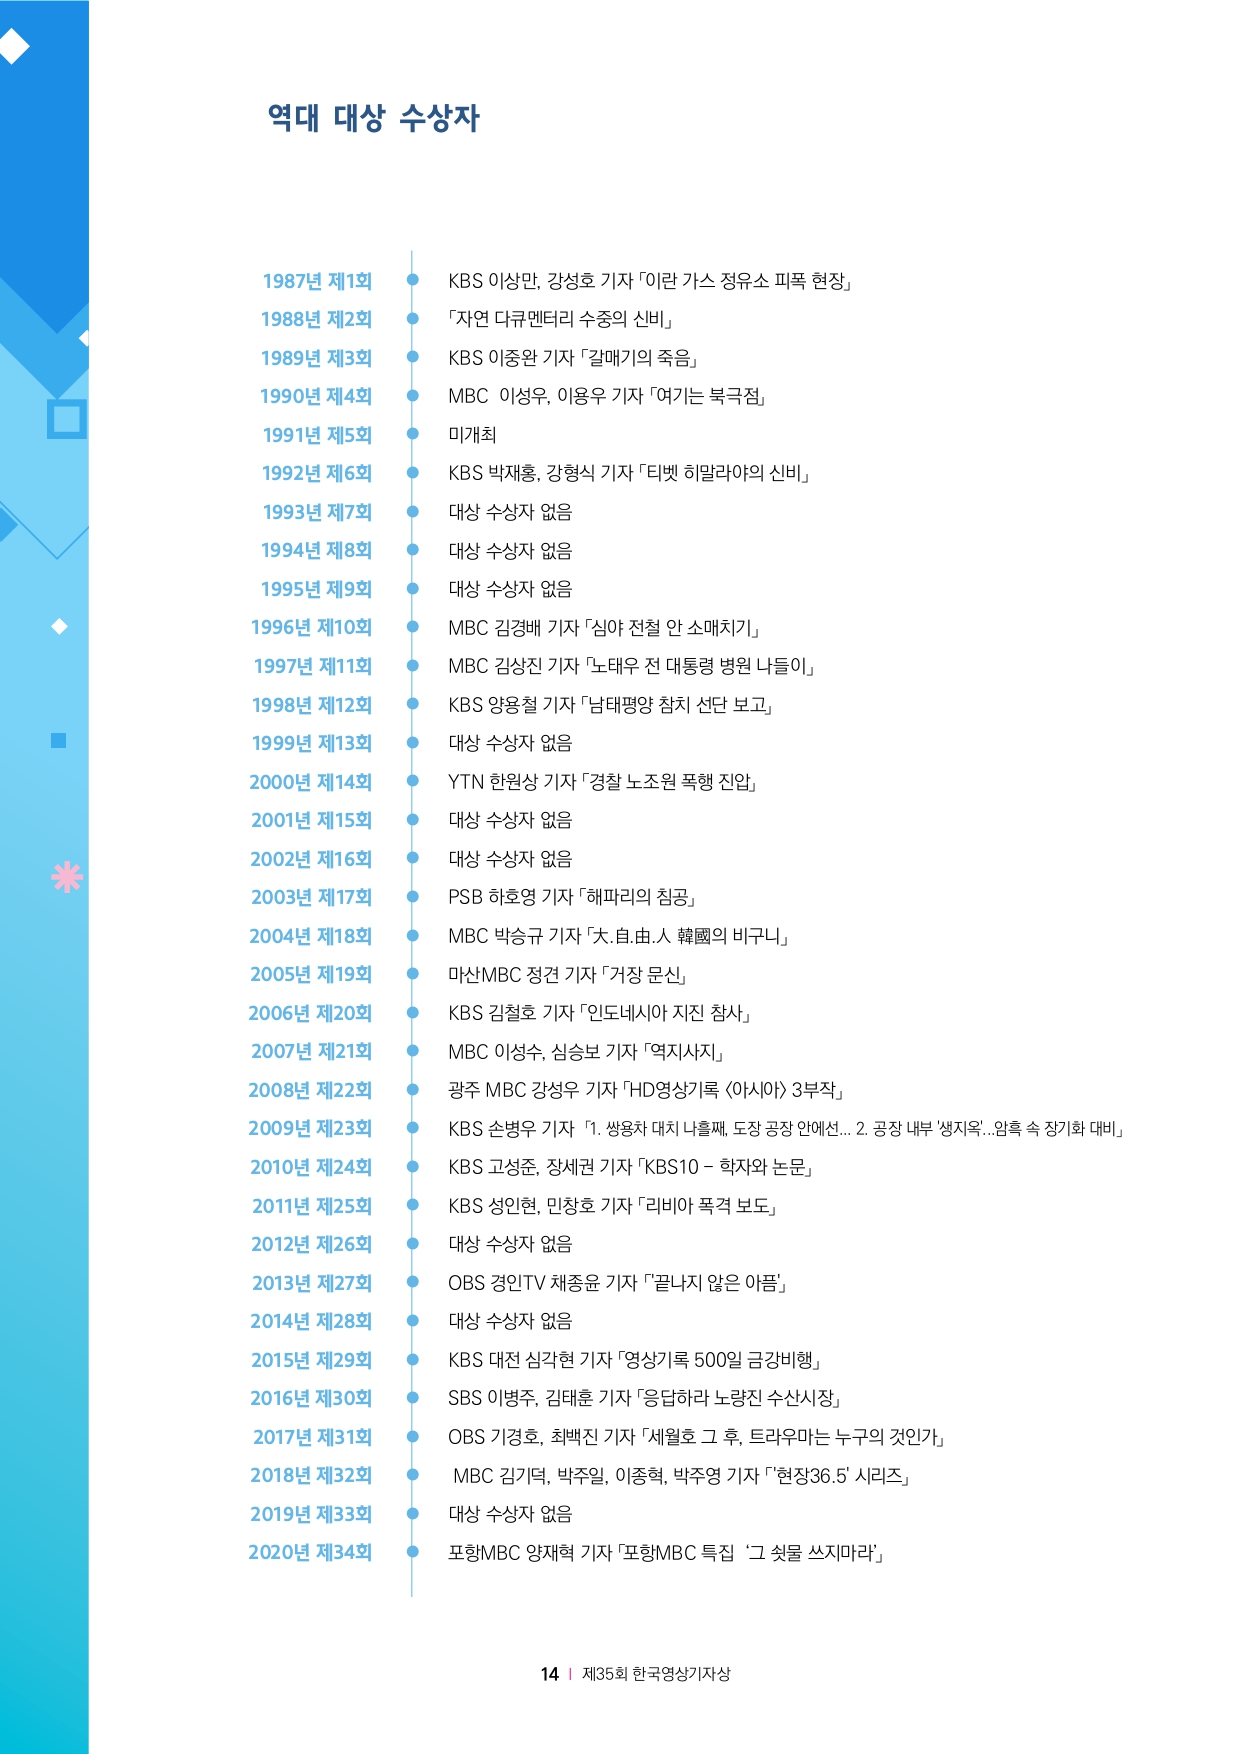 제35회 한국영상기자상 브로셔_page-0014.jpg